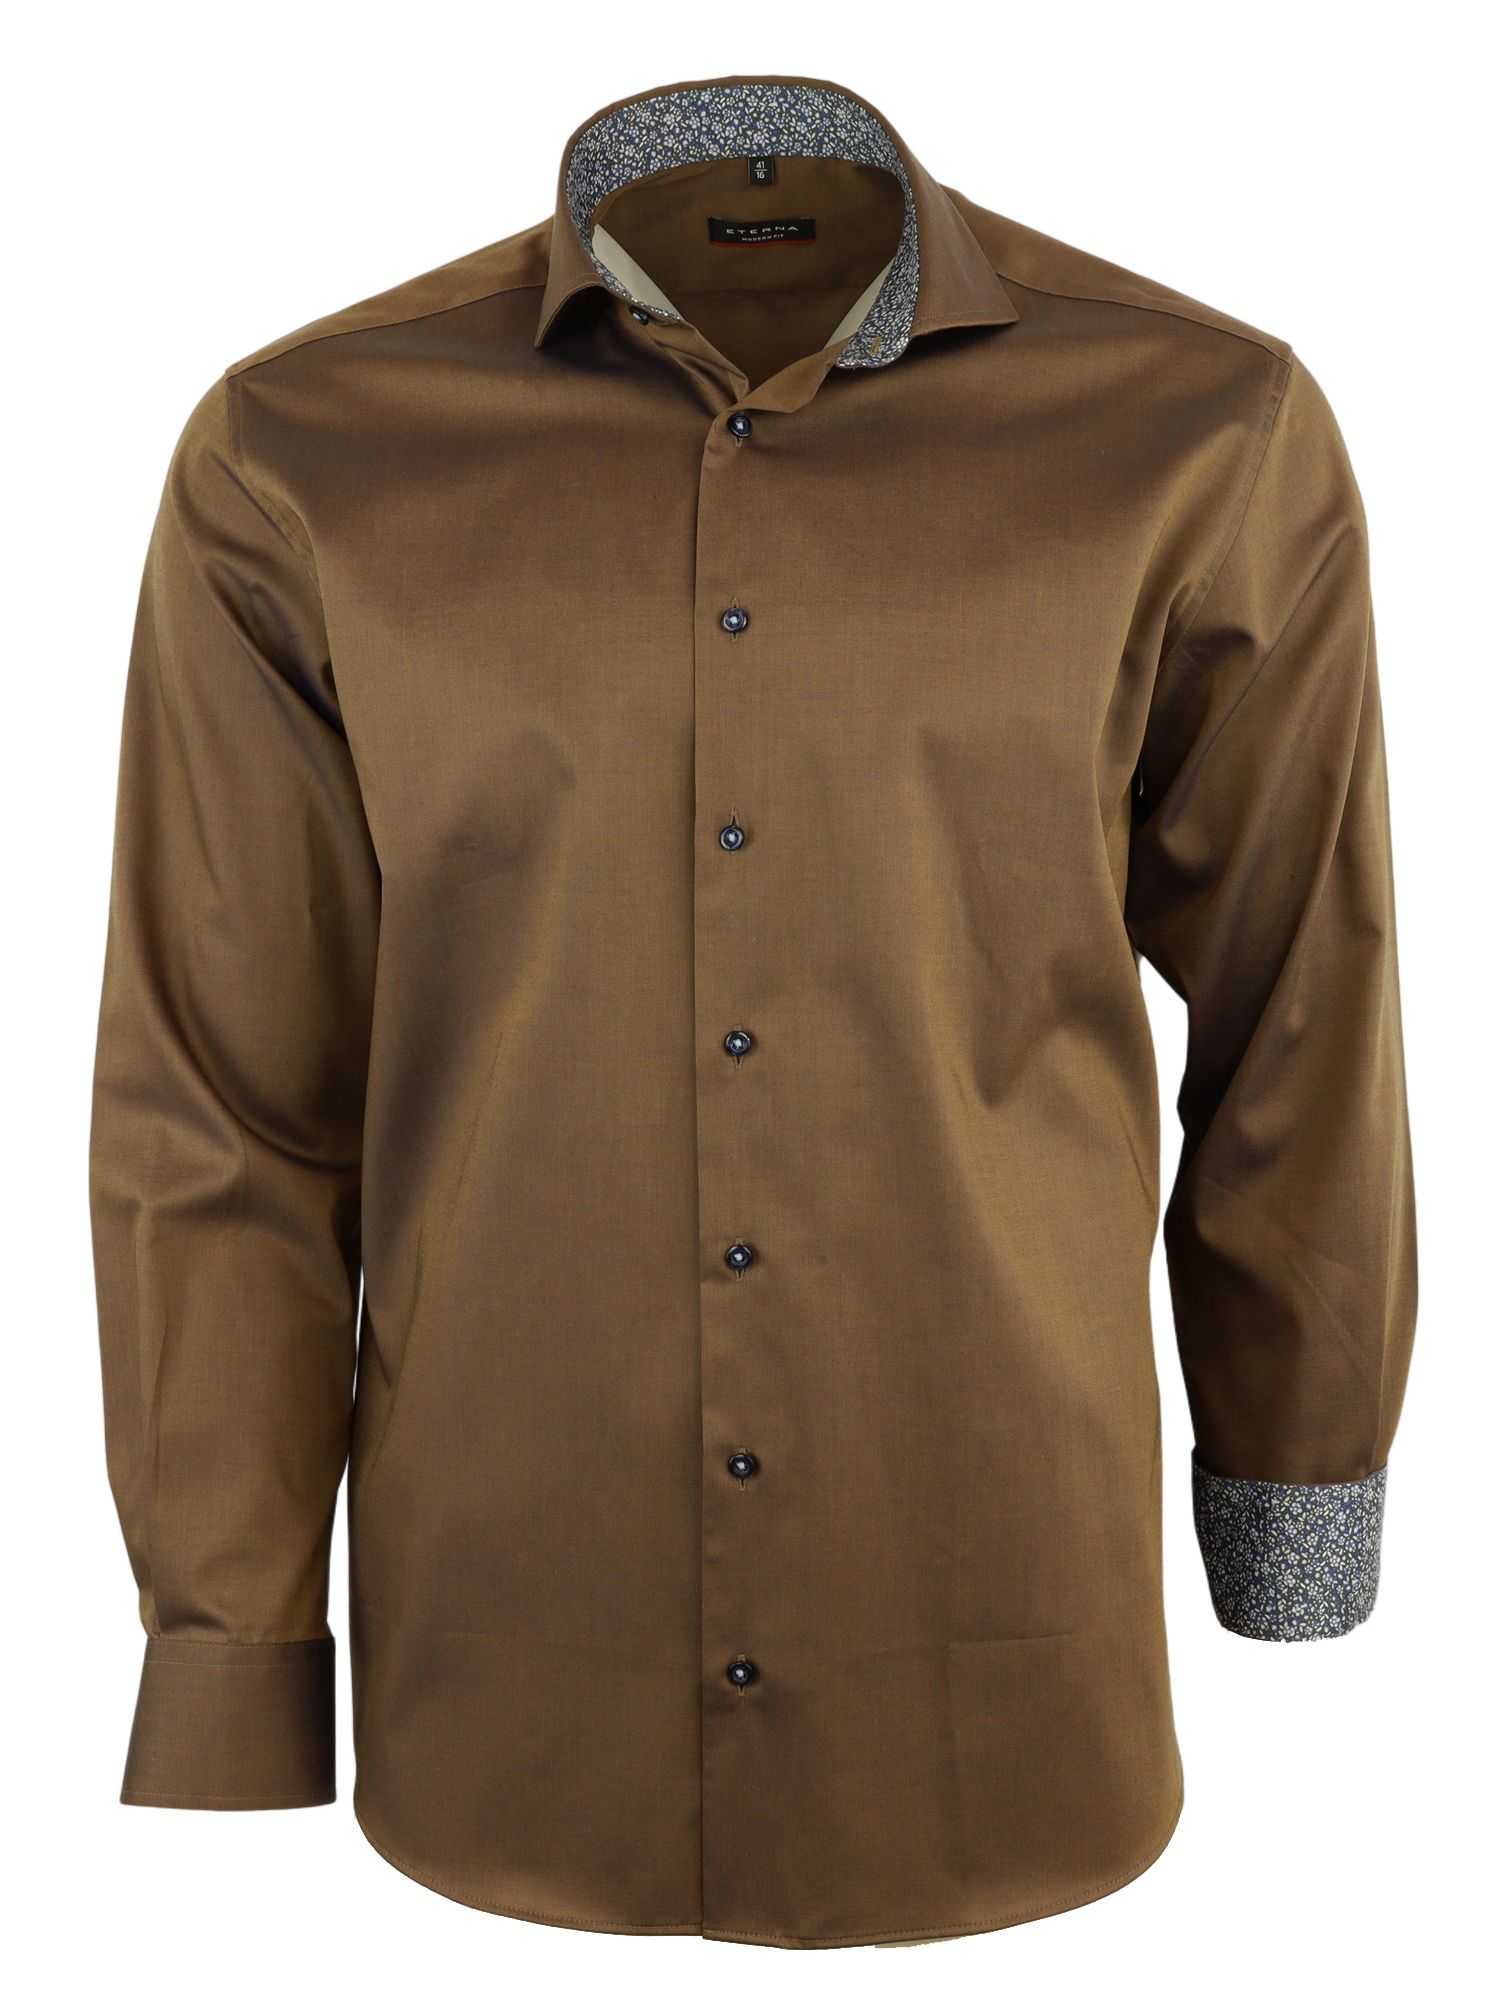 Мужская рубашка ETERNA, коричневая, цвет коричневый, размер 50 - фото 1